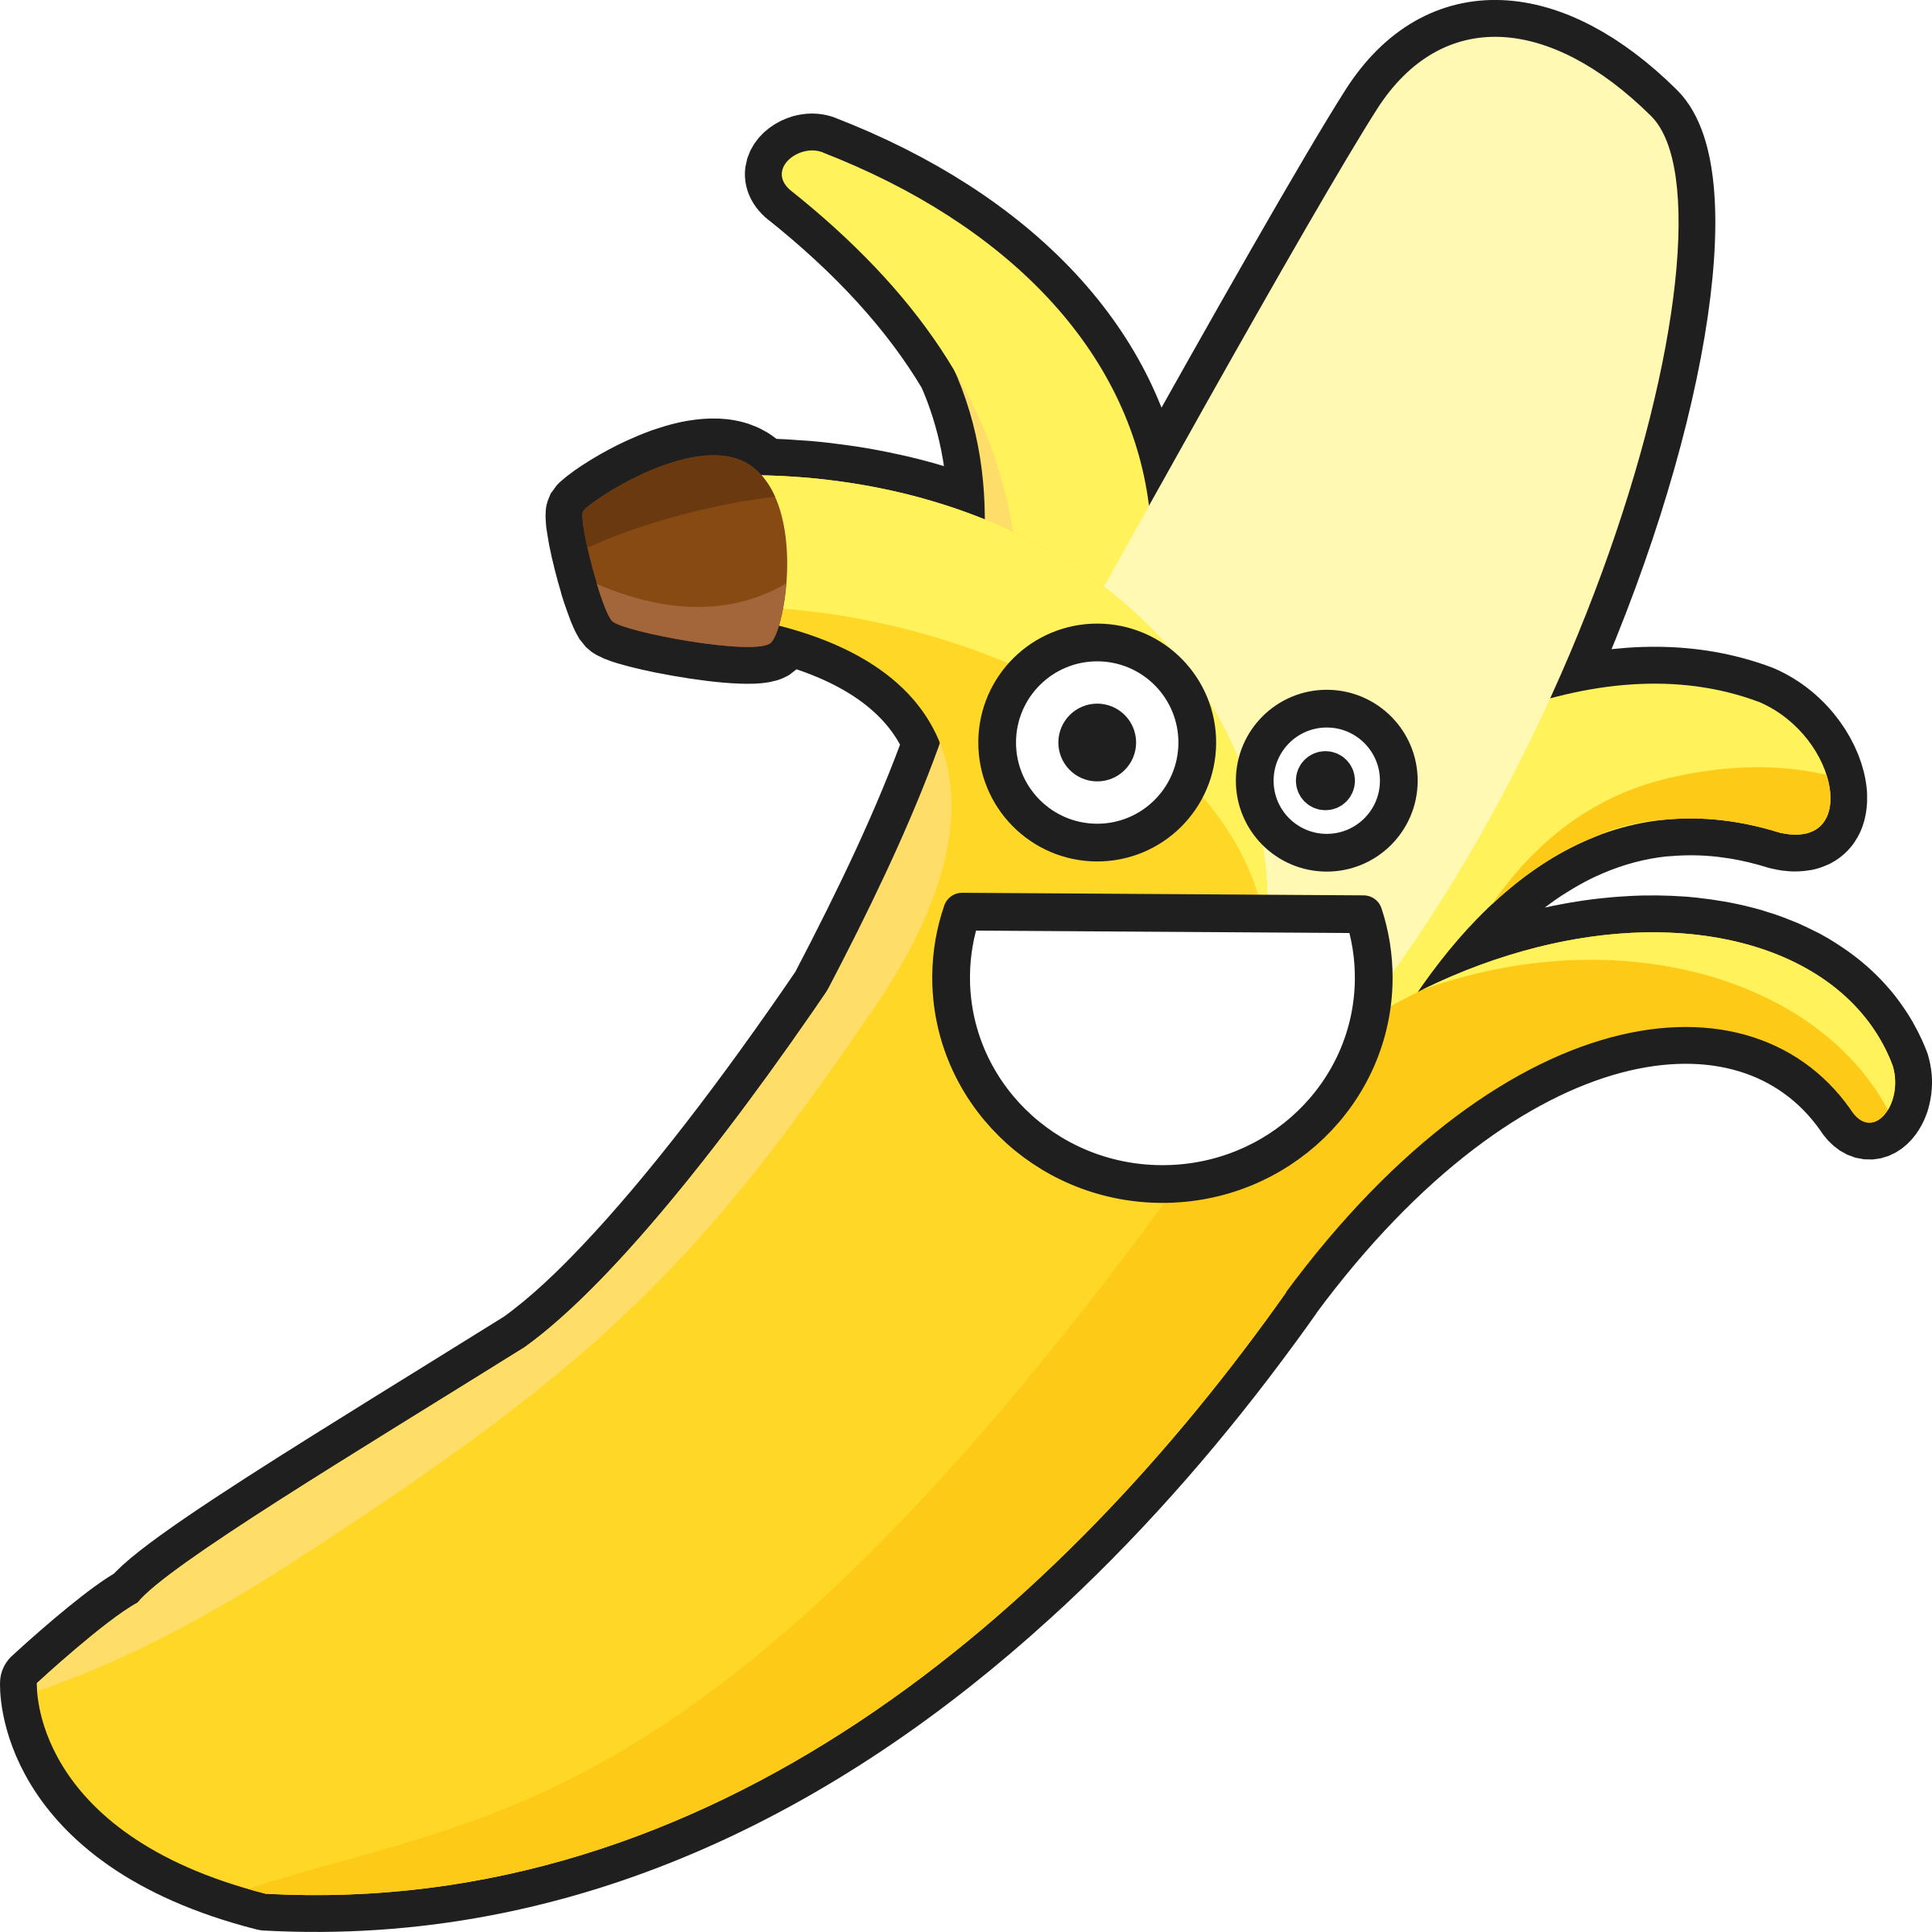 Banana - รูป กล้วย การ์ตูน (2400x2400)